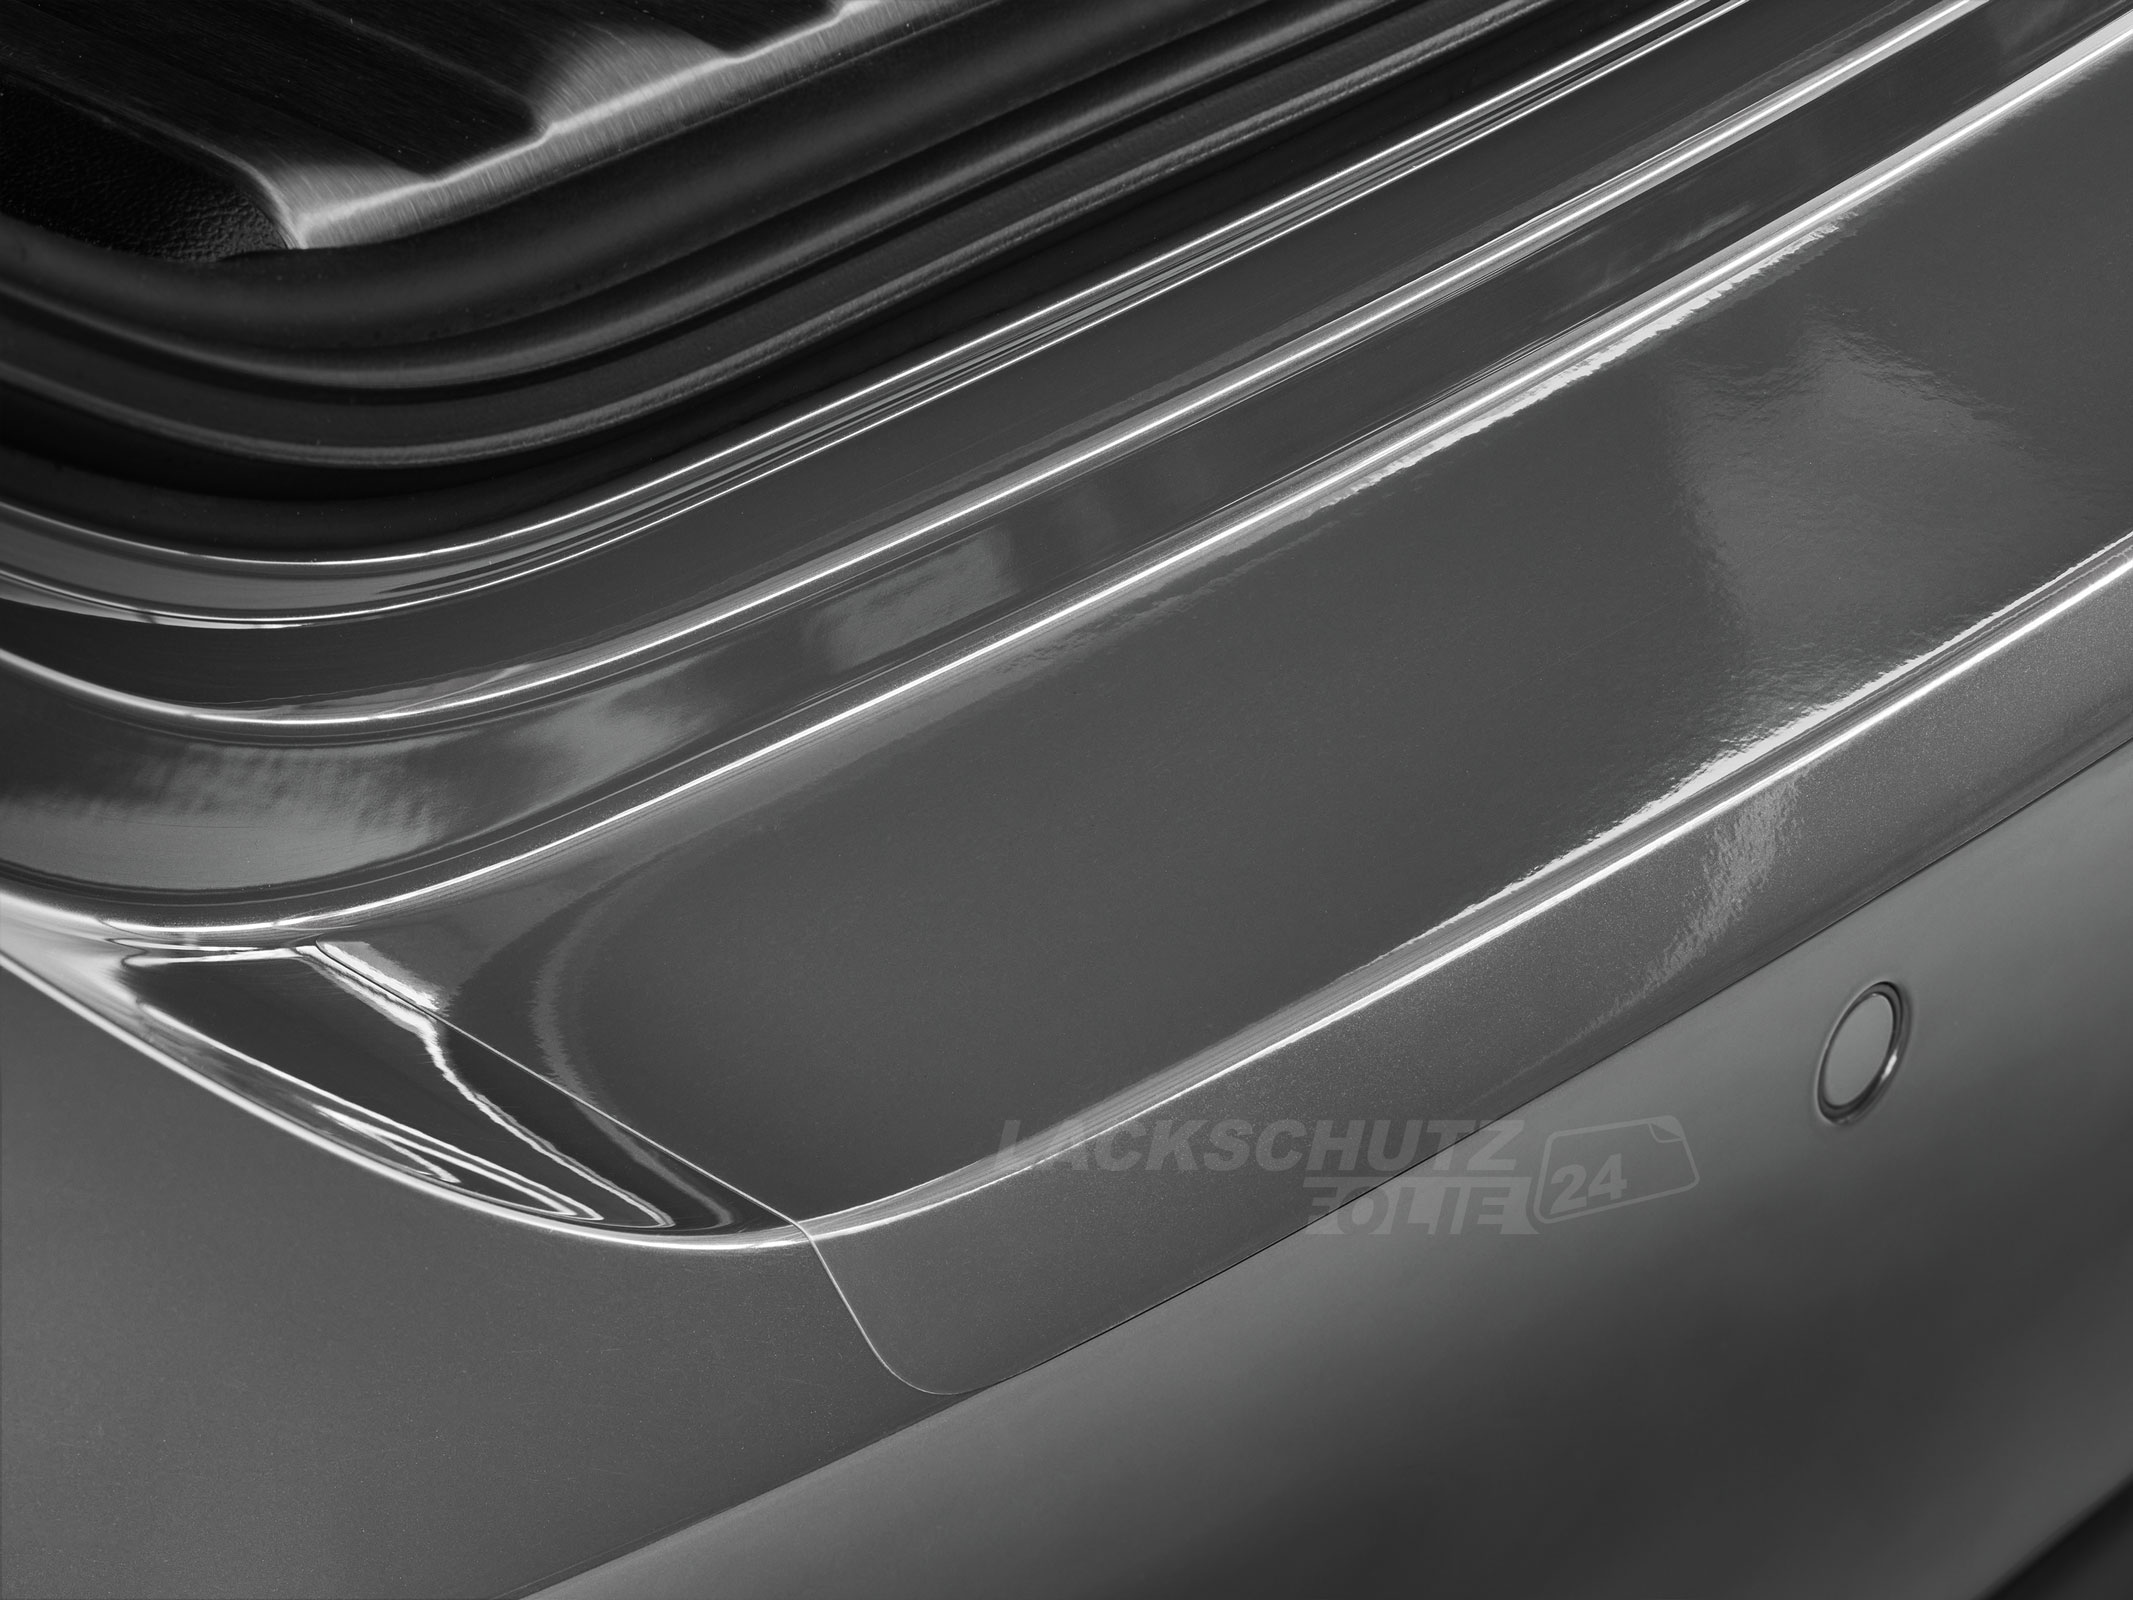 Ladekantenschutzfolie - Transparent Glatt Hochglänzend 150 µm stark für Honda Jazz (II) Typ GE, BJ 11/2008-04/2011